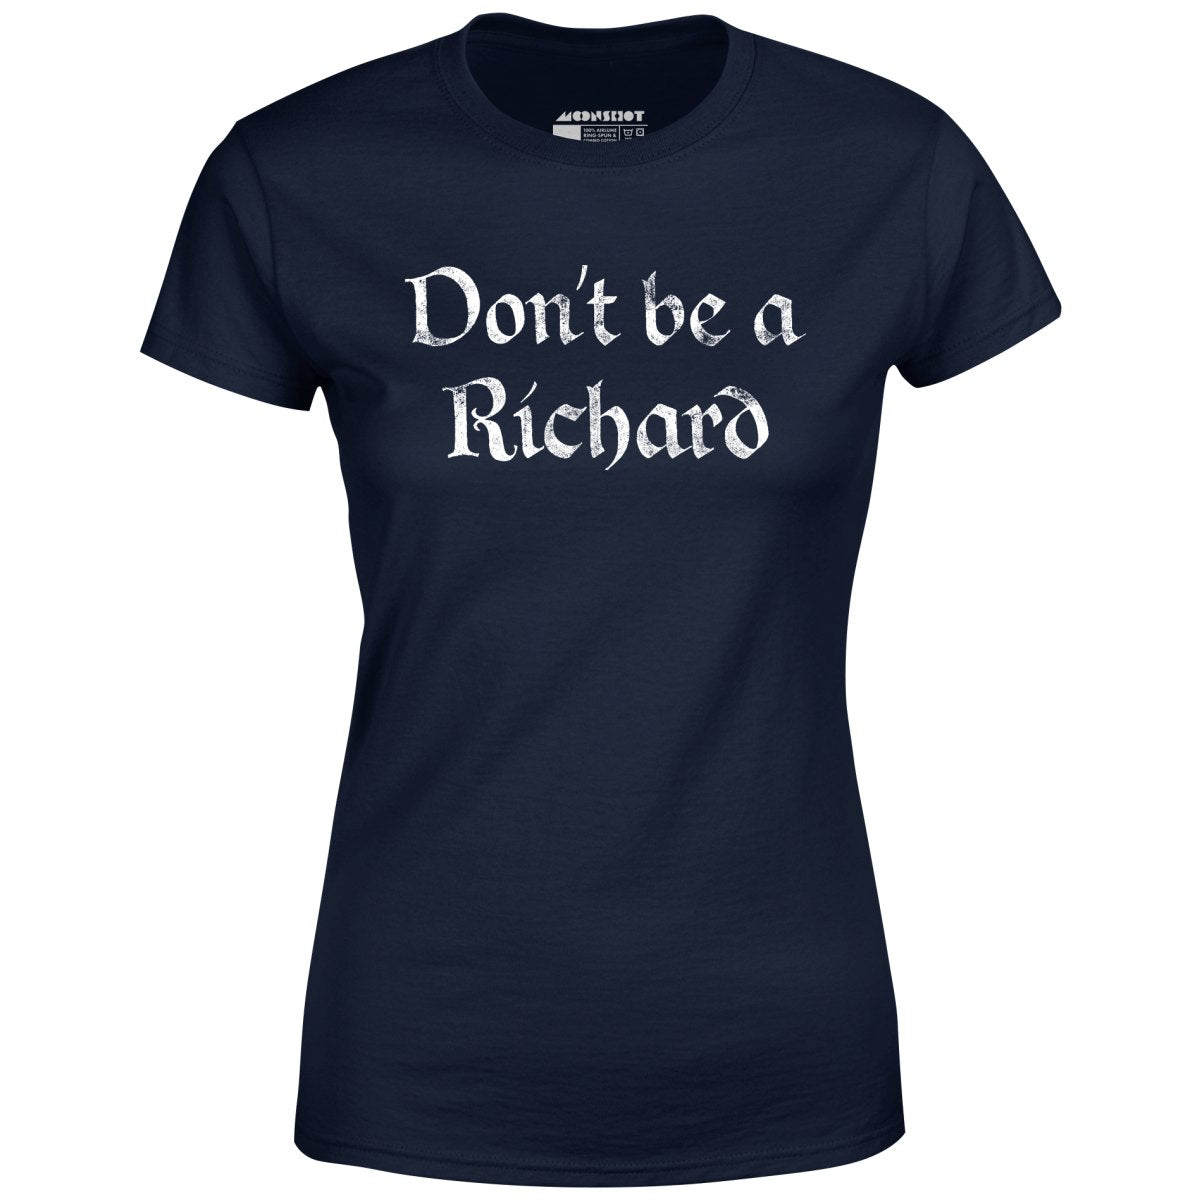 Don't Be a Richard - Women's T-Shirt